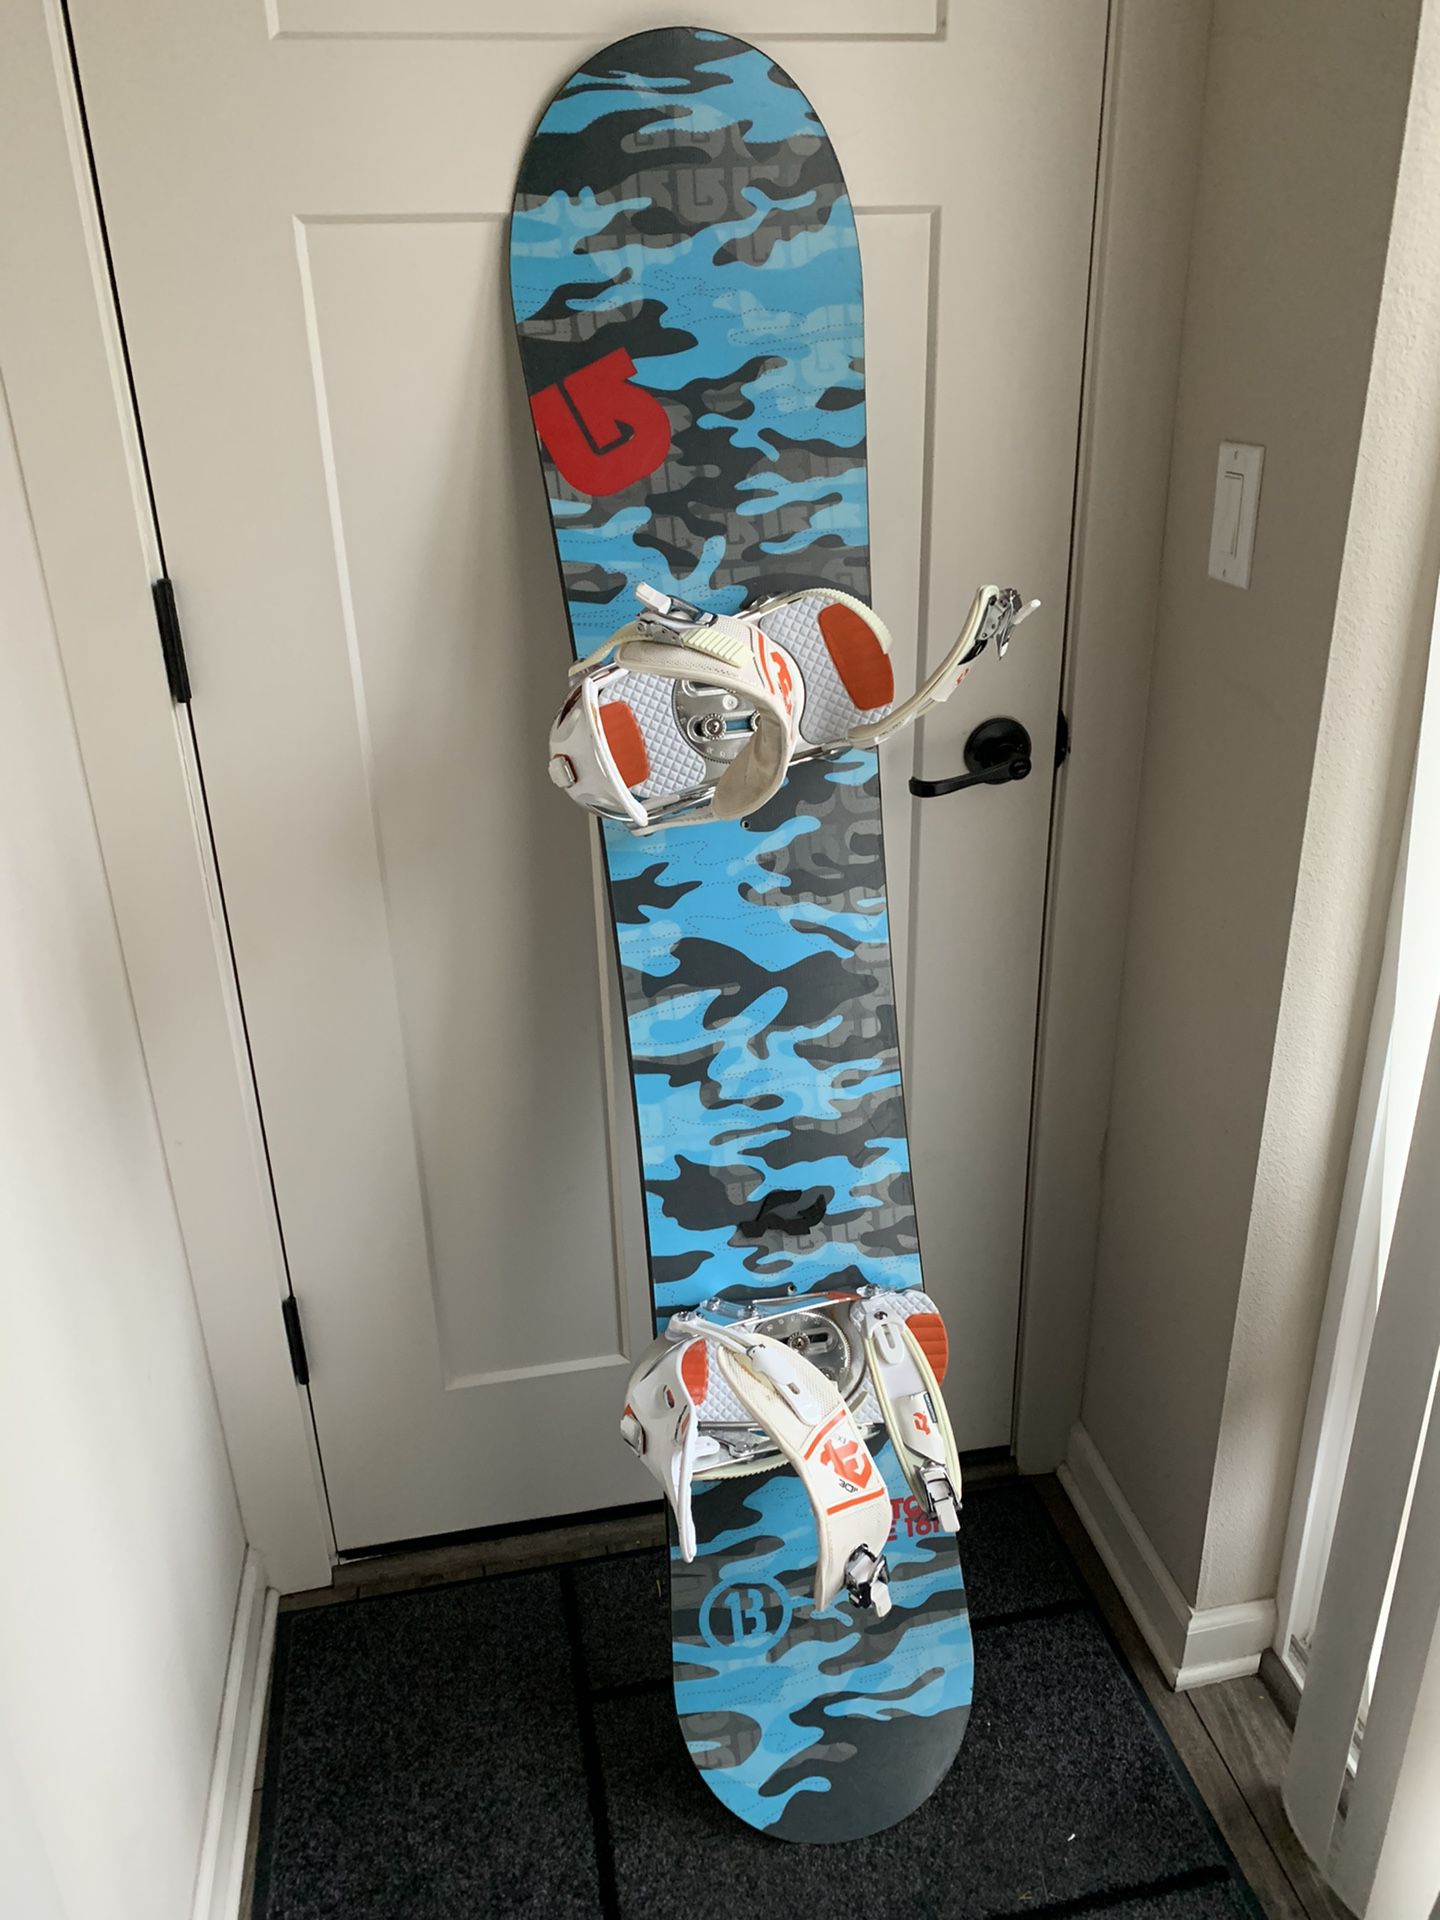 Burton Indie snowboard